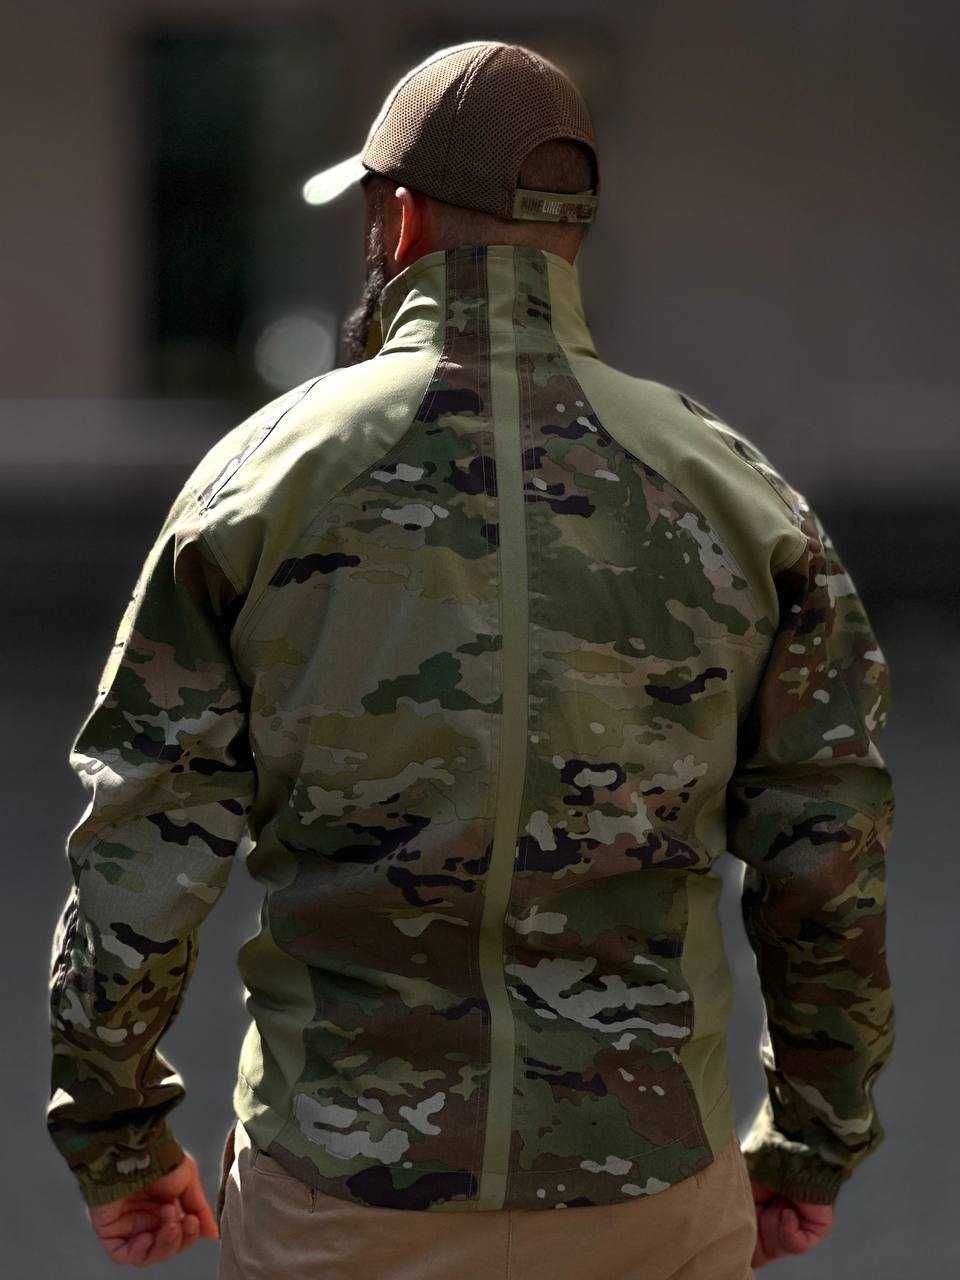 Куртка тактична вітрозахисна Abrams Level 4 Lightweight NySpan